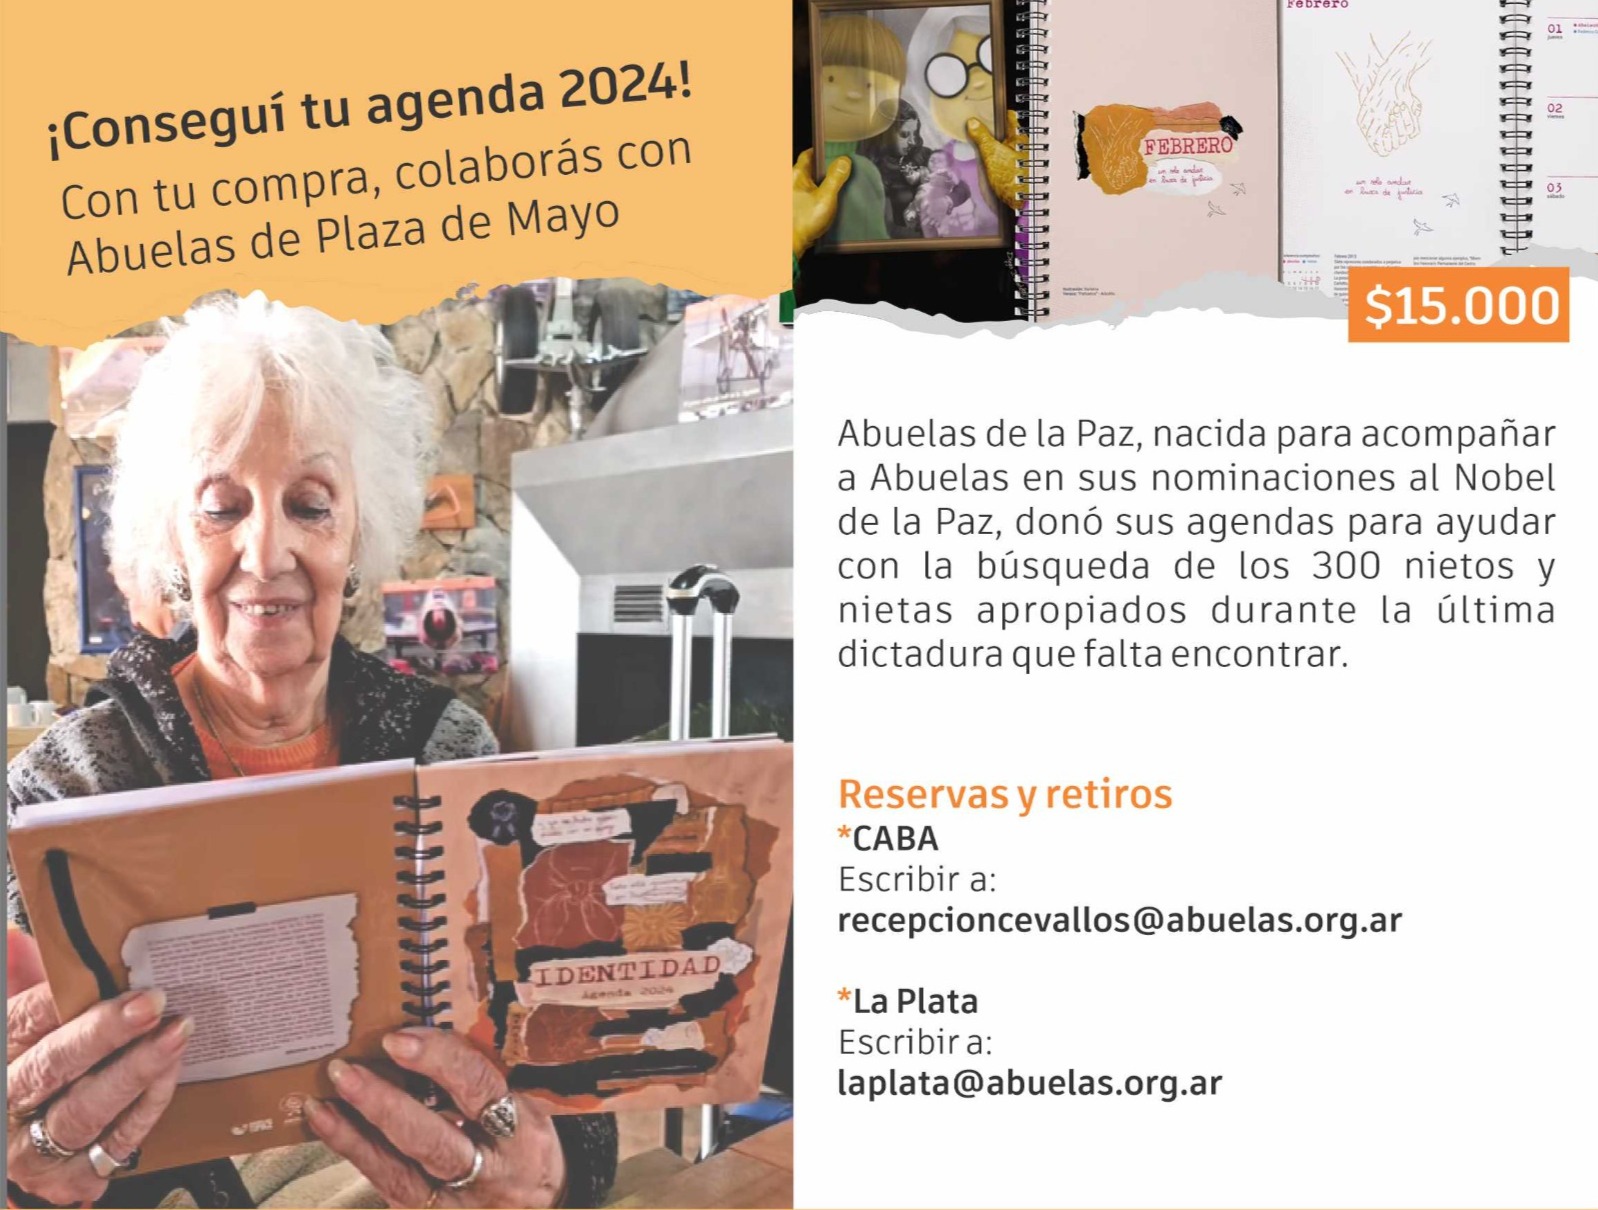 Con la compra de la Agenda Identidad 2024 podés colaborar con Abuelas de Plaza de Mayo